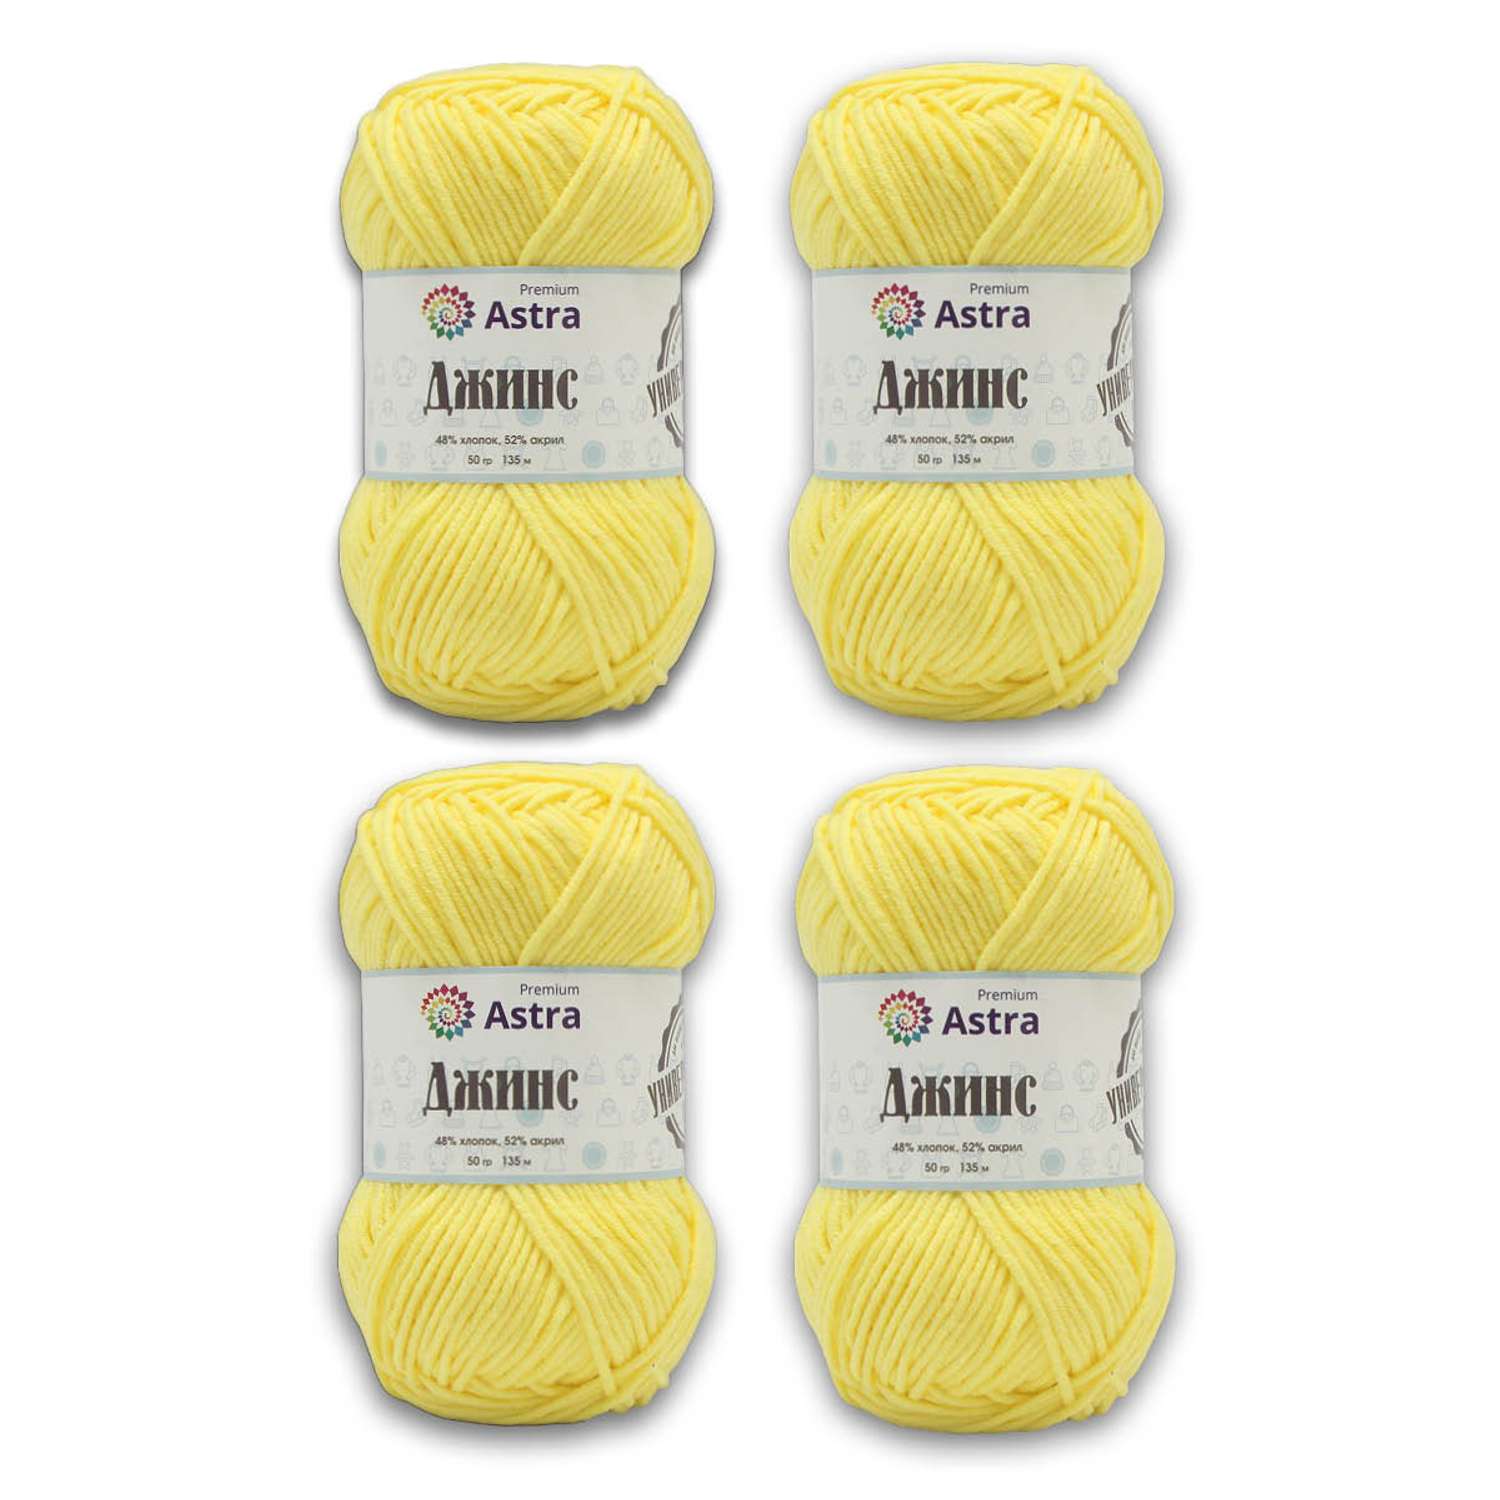 Пряжа для вязания Astra Premium джинс для повседневной одежды акрил хлопок 50 гр 135 м 310 желтый 4 мотка - фото 8